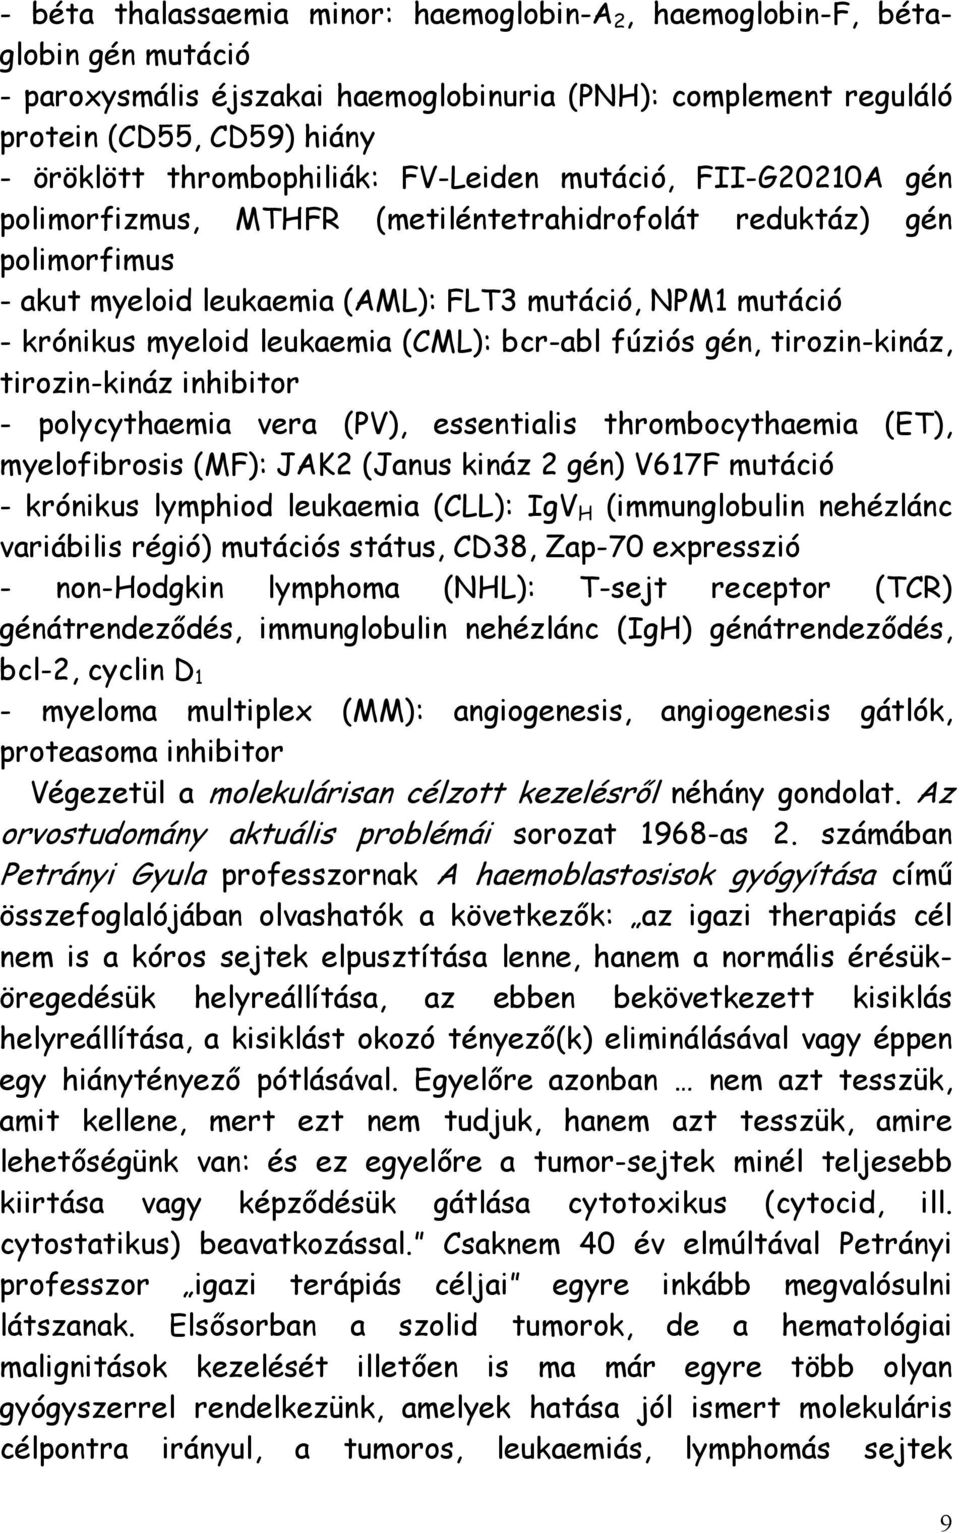 myeloid leukaemia (CML): bcr-abl fúziós gén, tirozin-kináz, tirozin-kináz inhibitor - polycythaemia vera (PV), essentialis thrombocythaemia (ET), myelofibrosis (MF): JAK2 (Janus kináz 2 gén) V617F